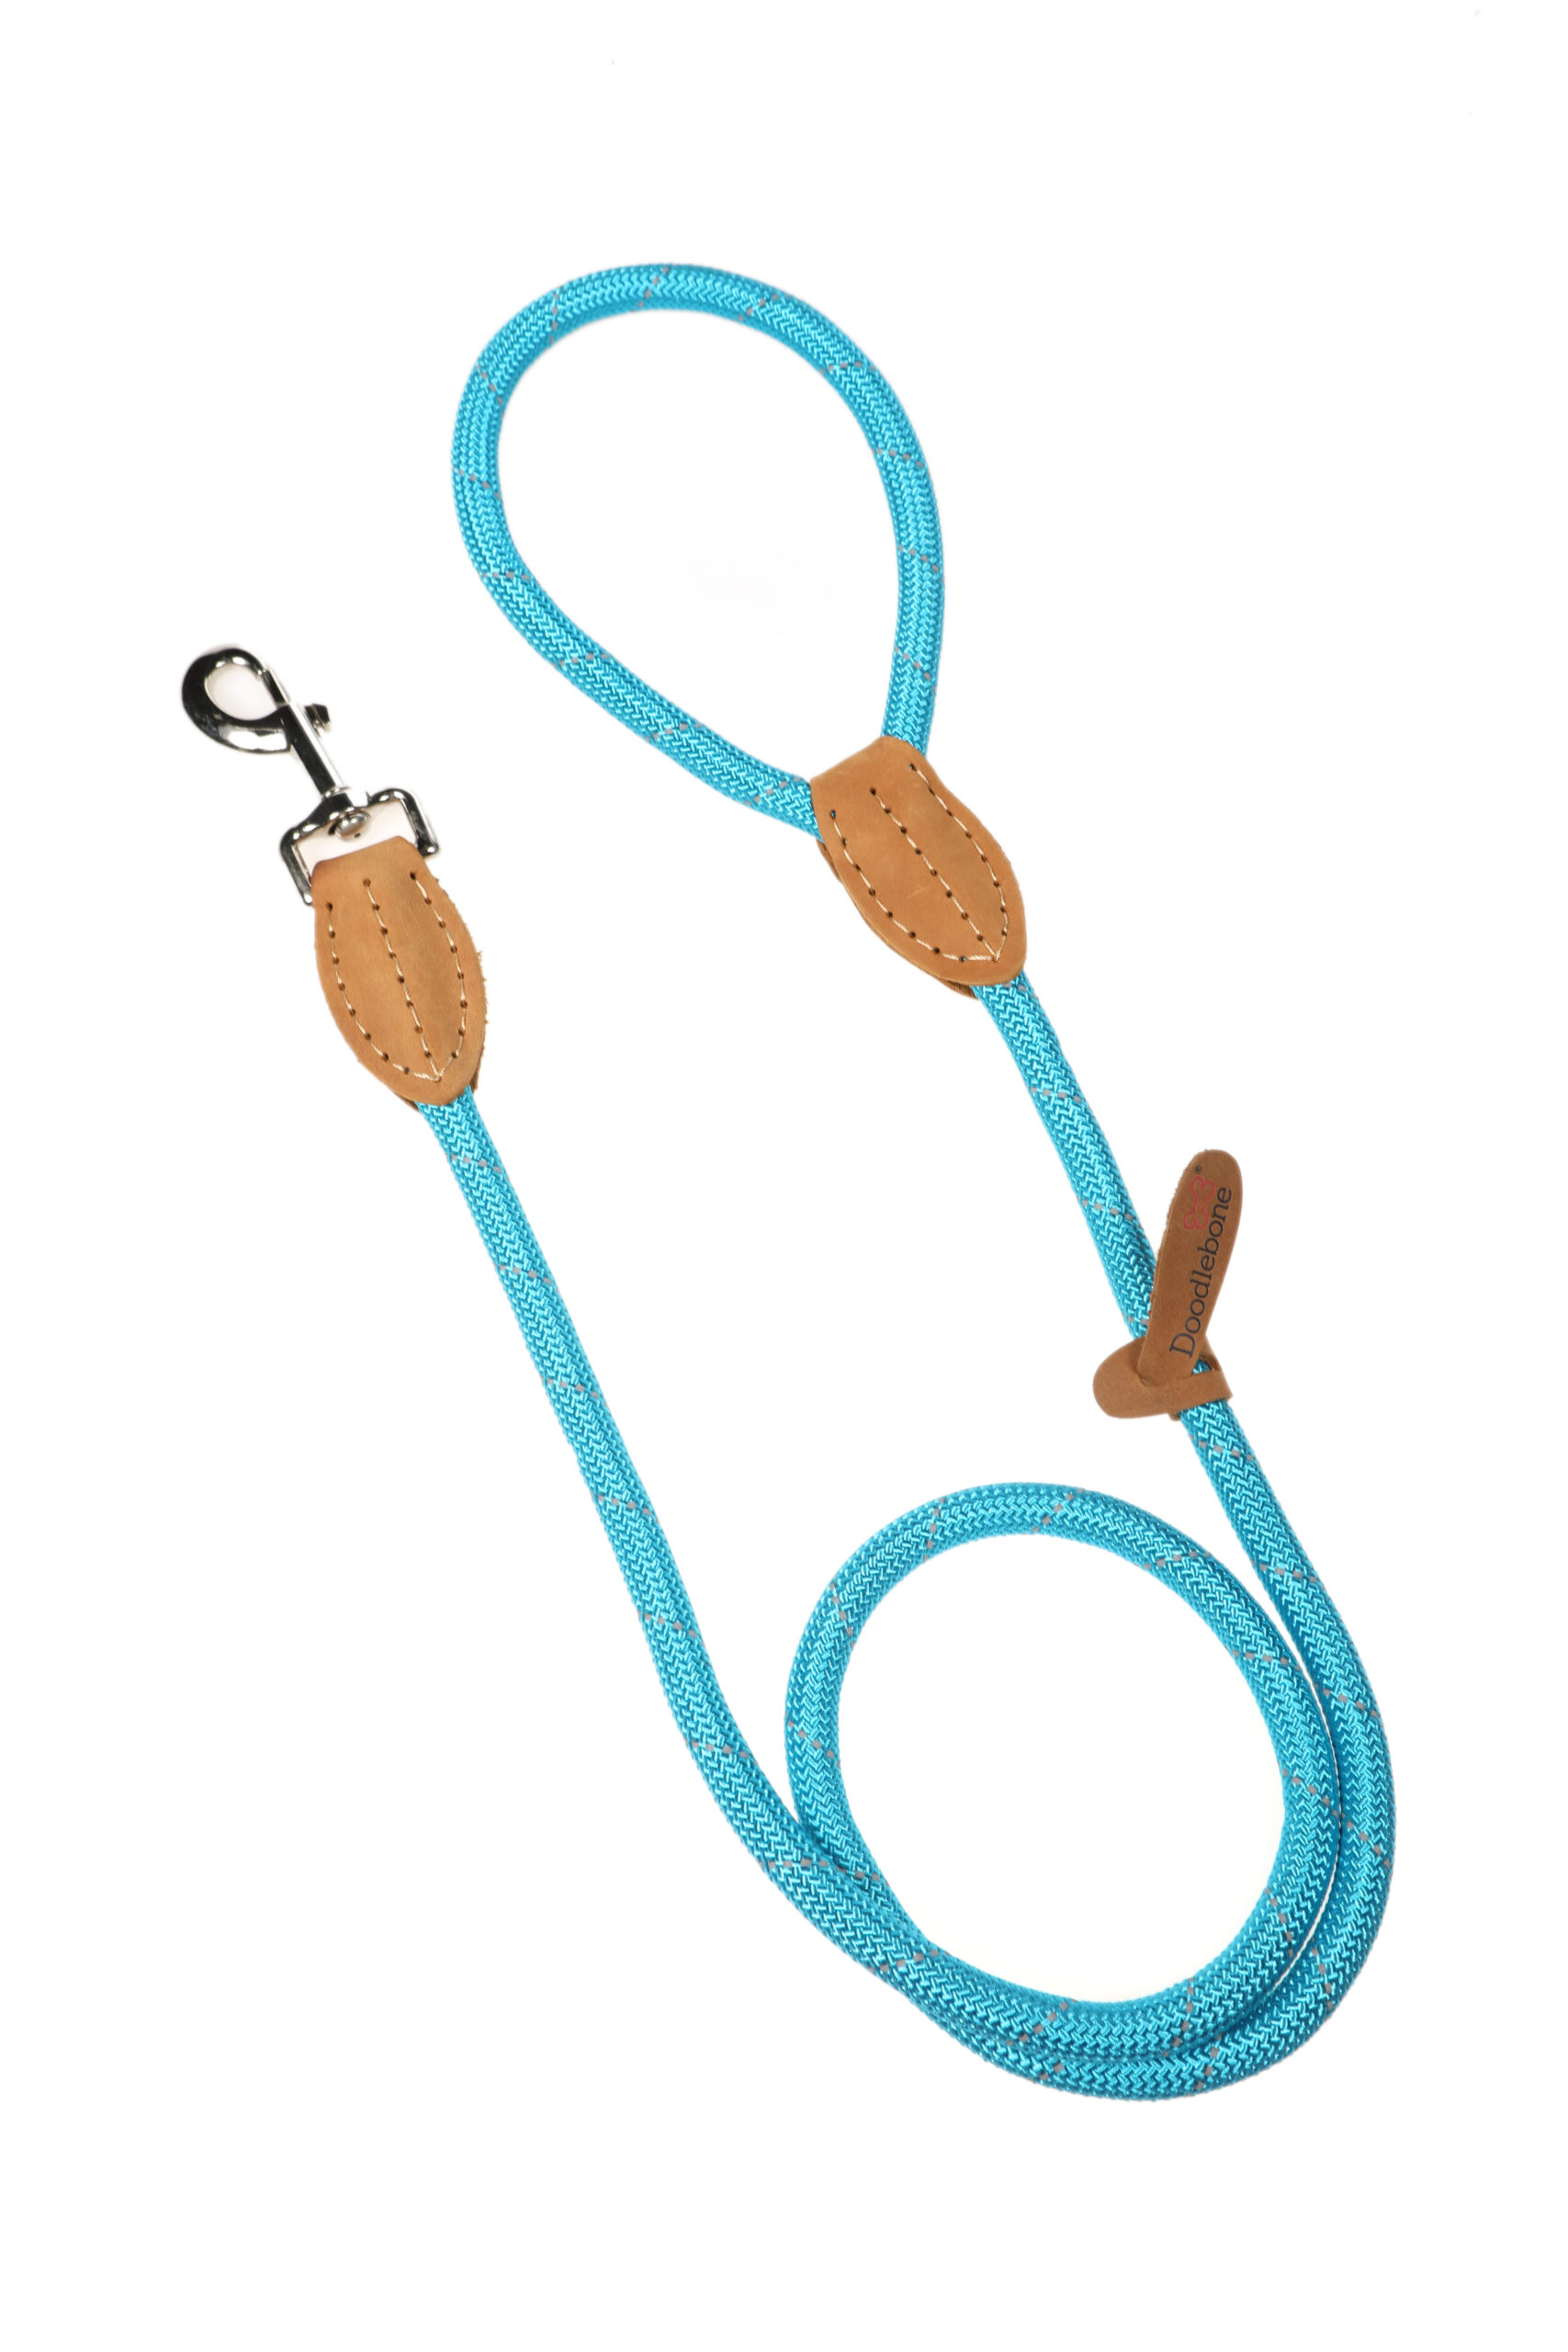 Doodlebone Originals Aqua Blue Rope Dog Lead